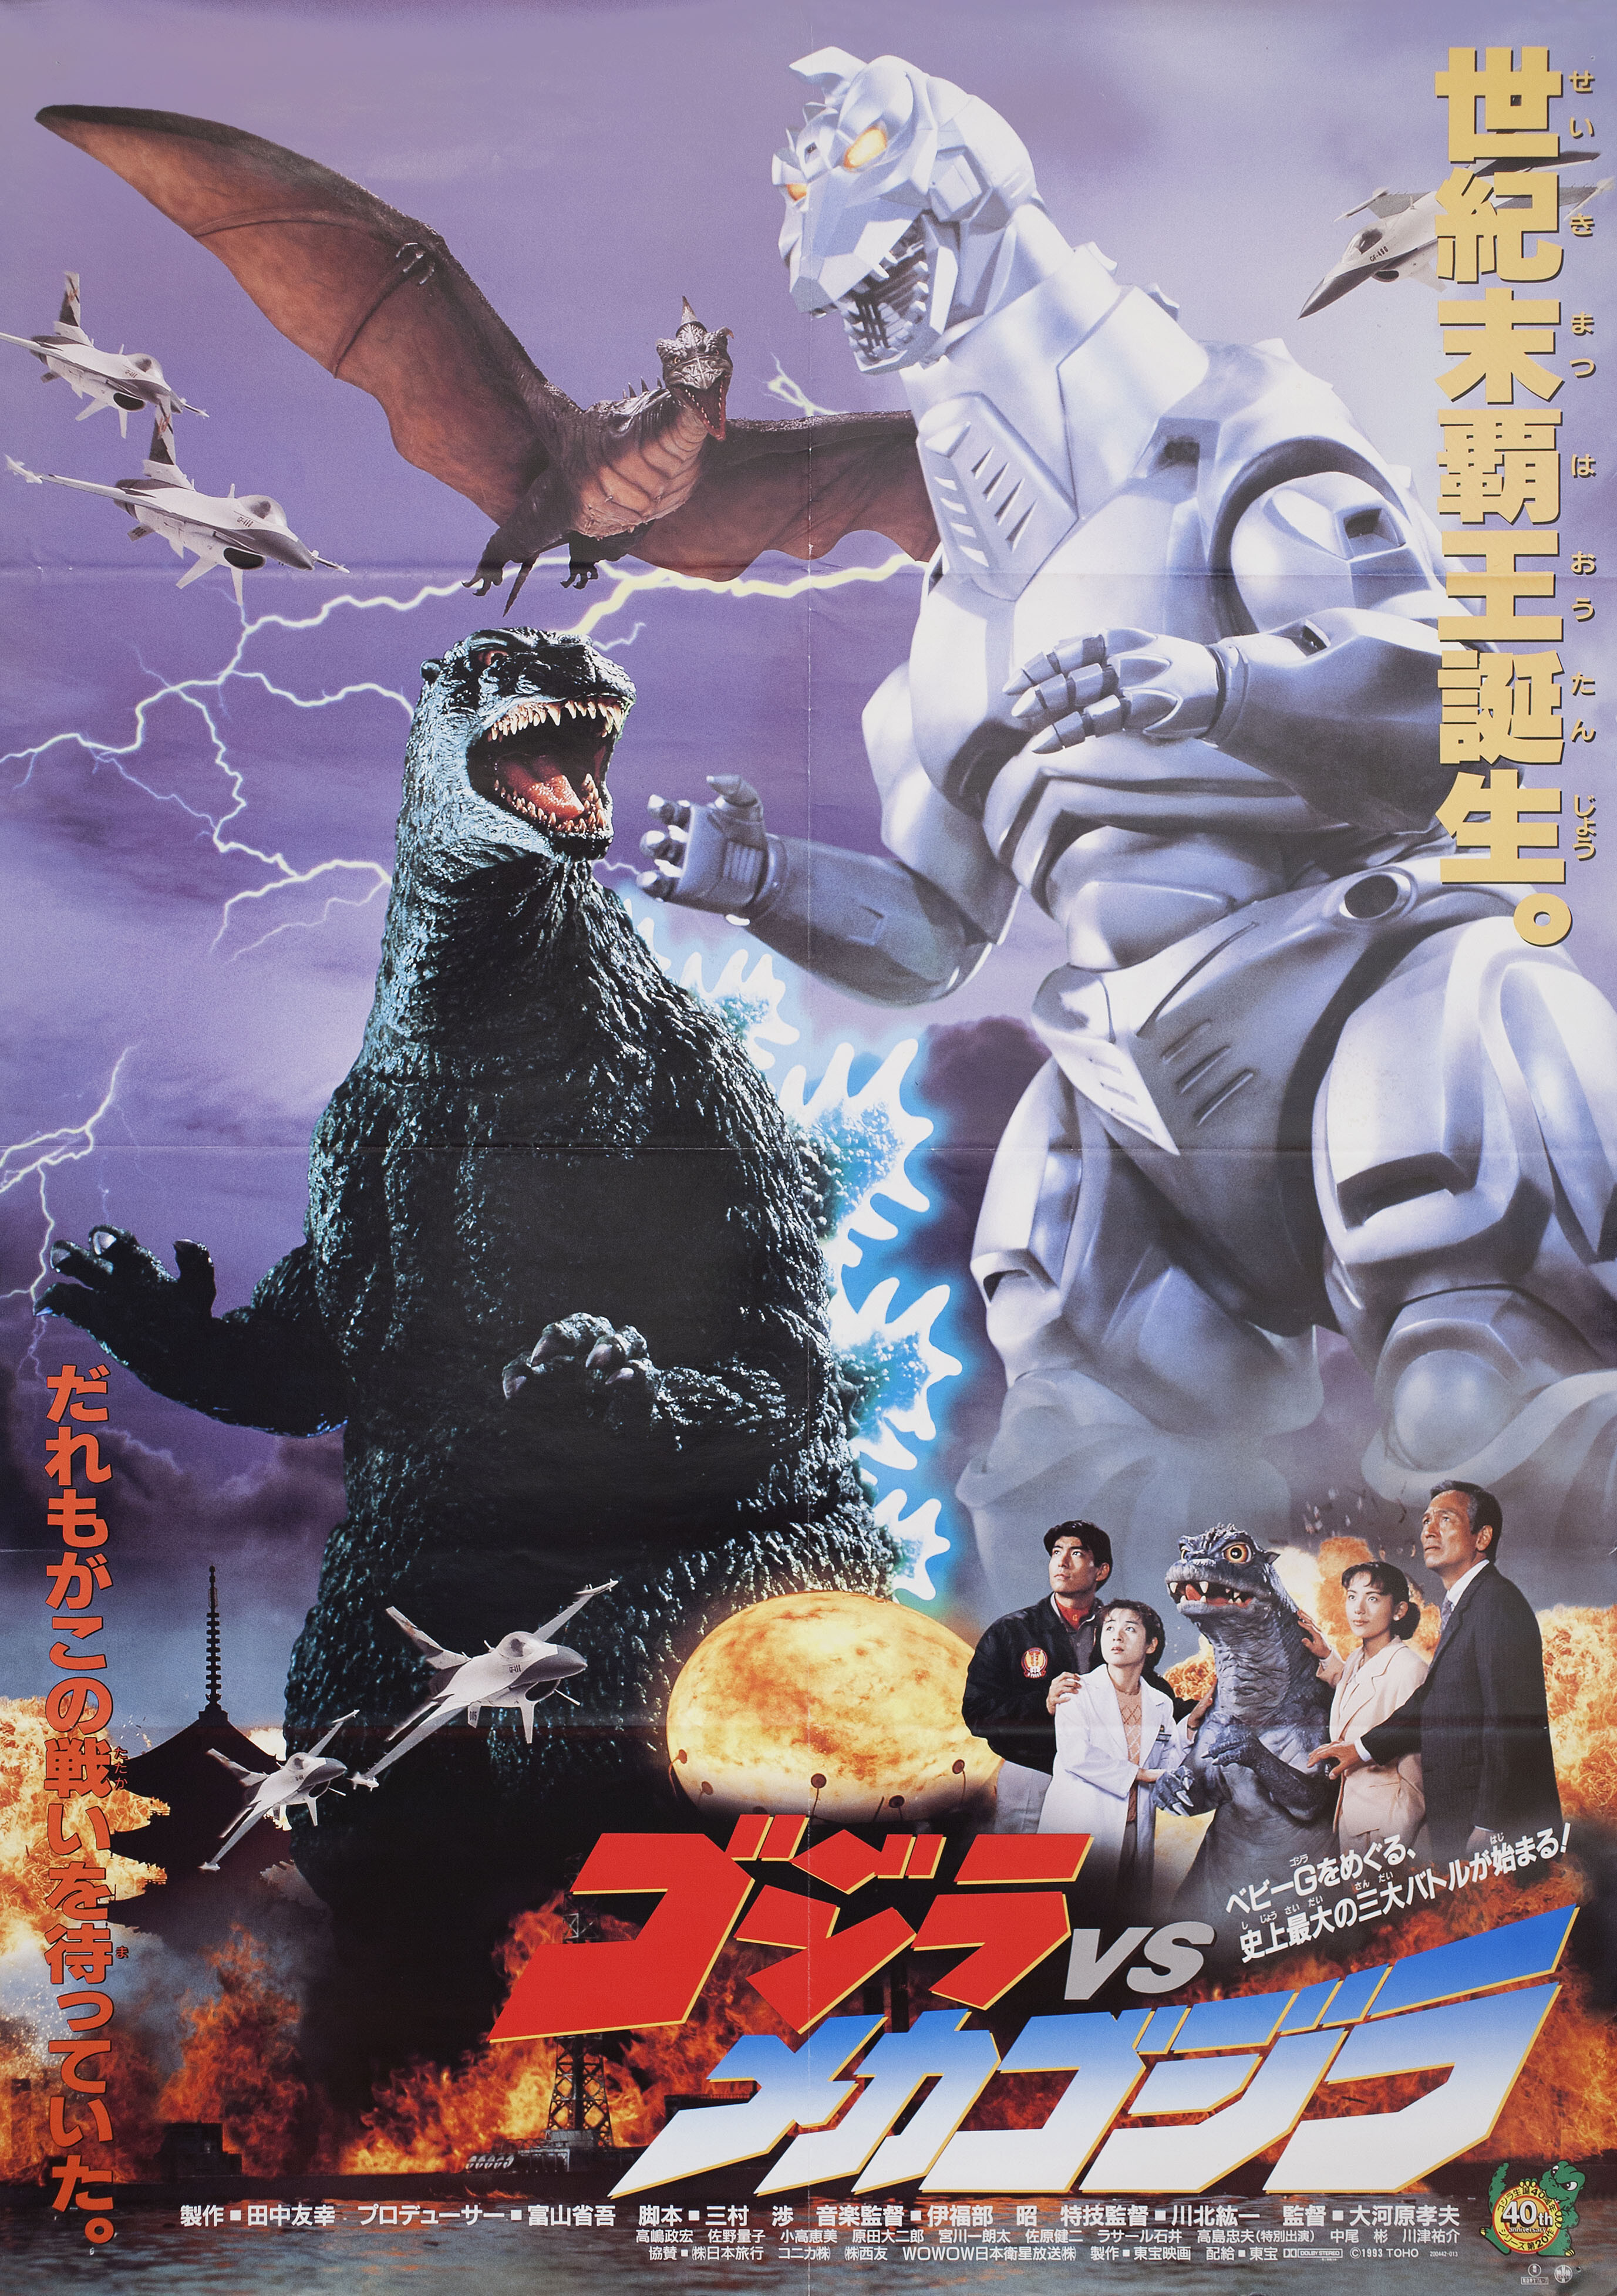 Годзилла против Мехагодзиллы (Godzilla vs. Mechagodzilla, 1993), режиссёр Такао Окавара, японский постер к фильму (монстры, 1993 год)